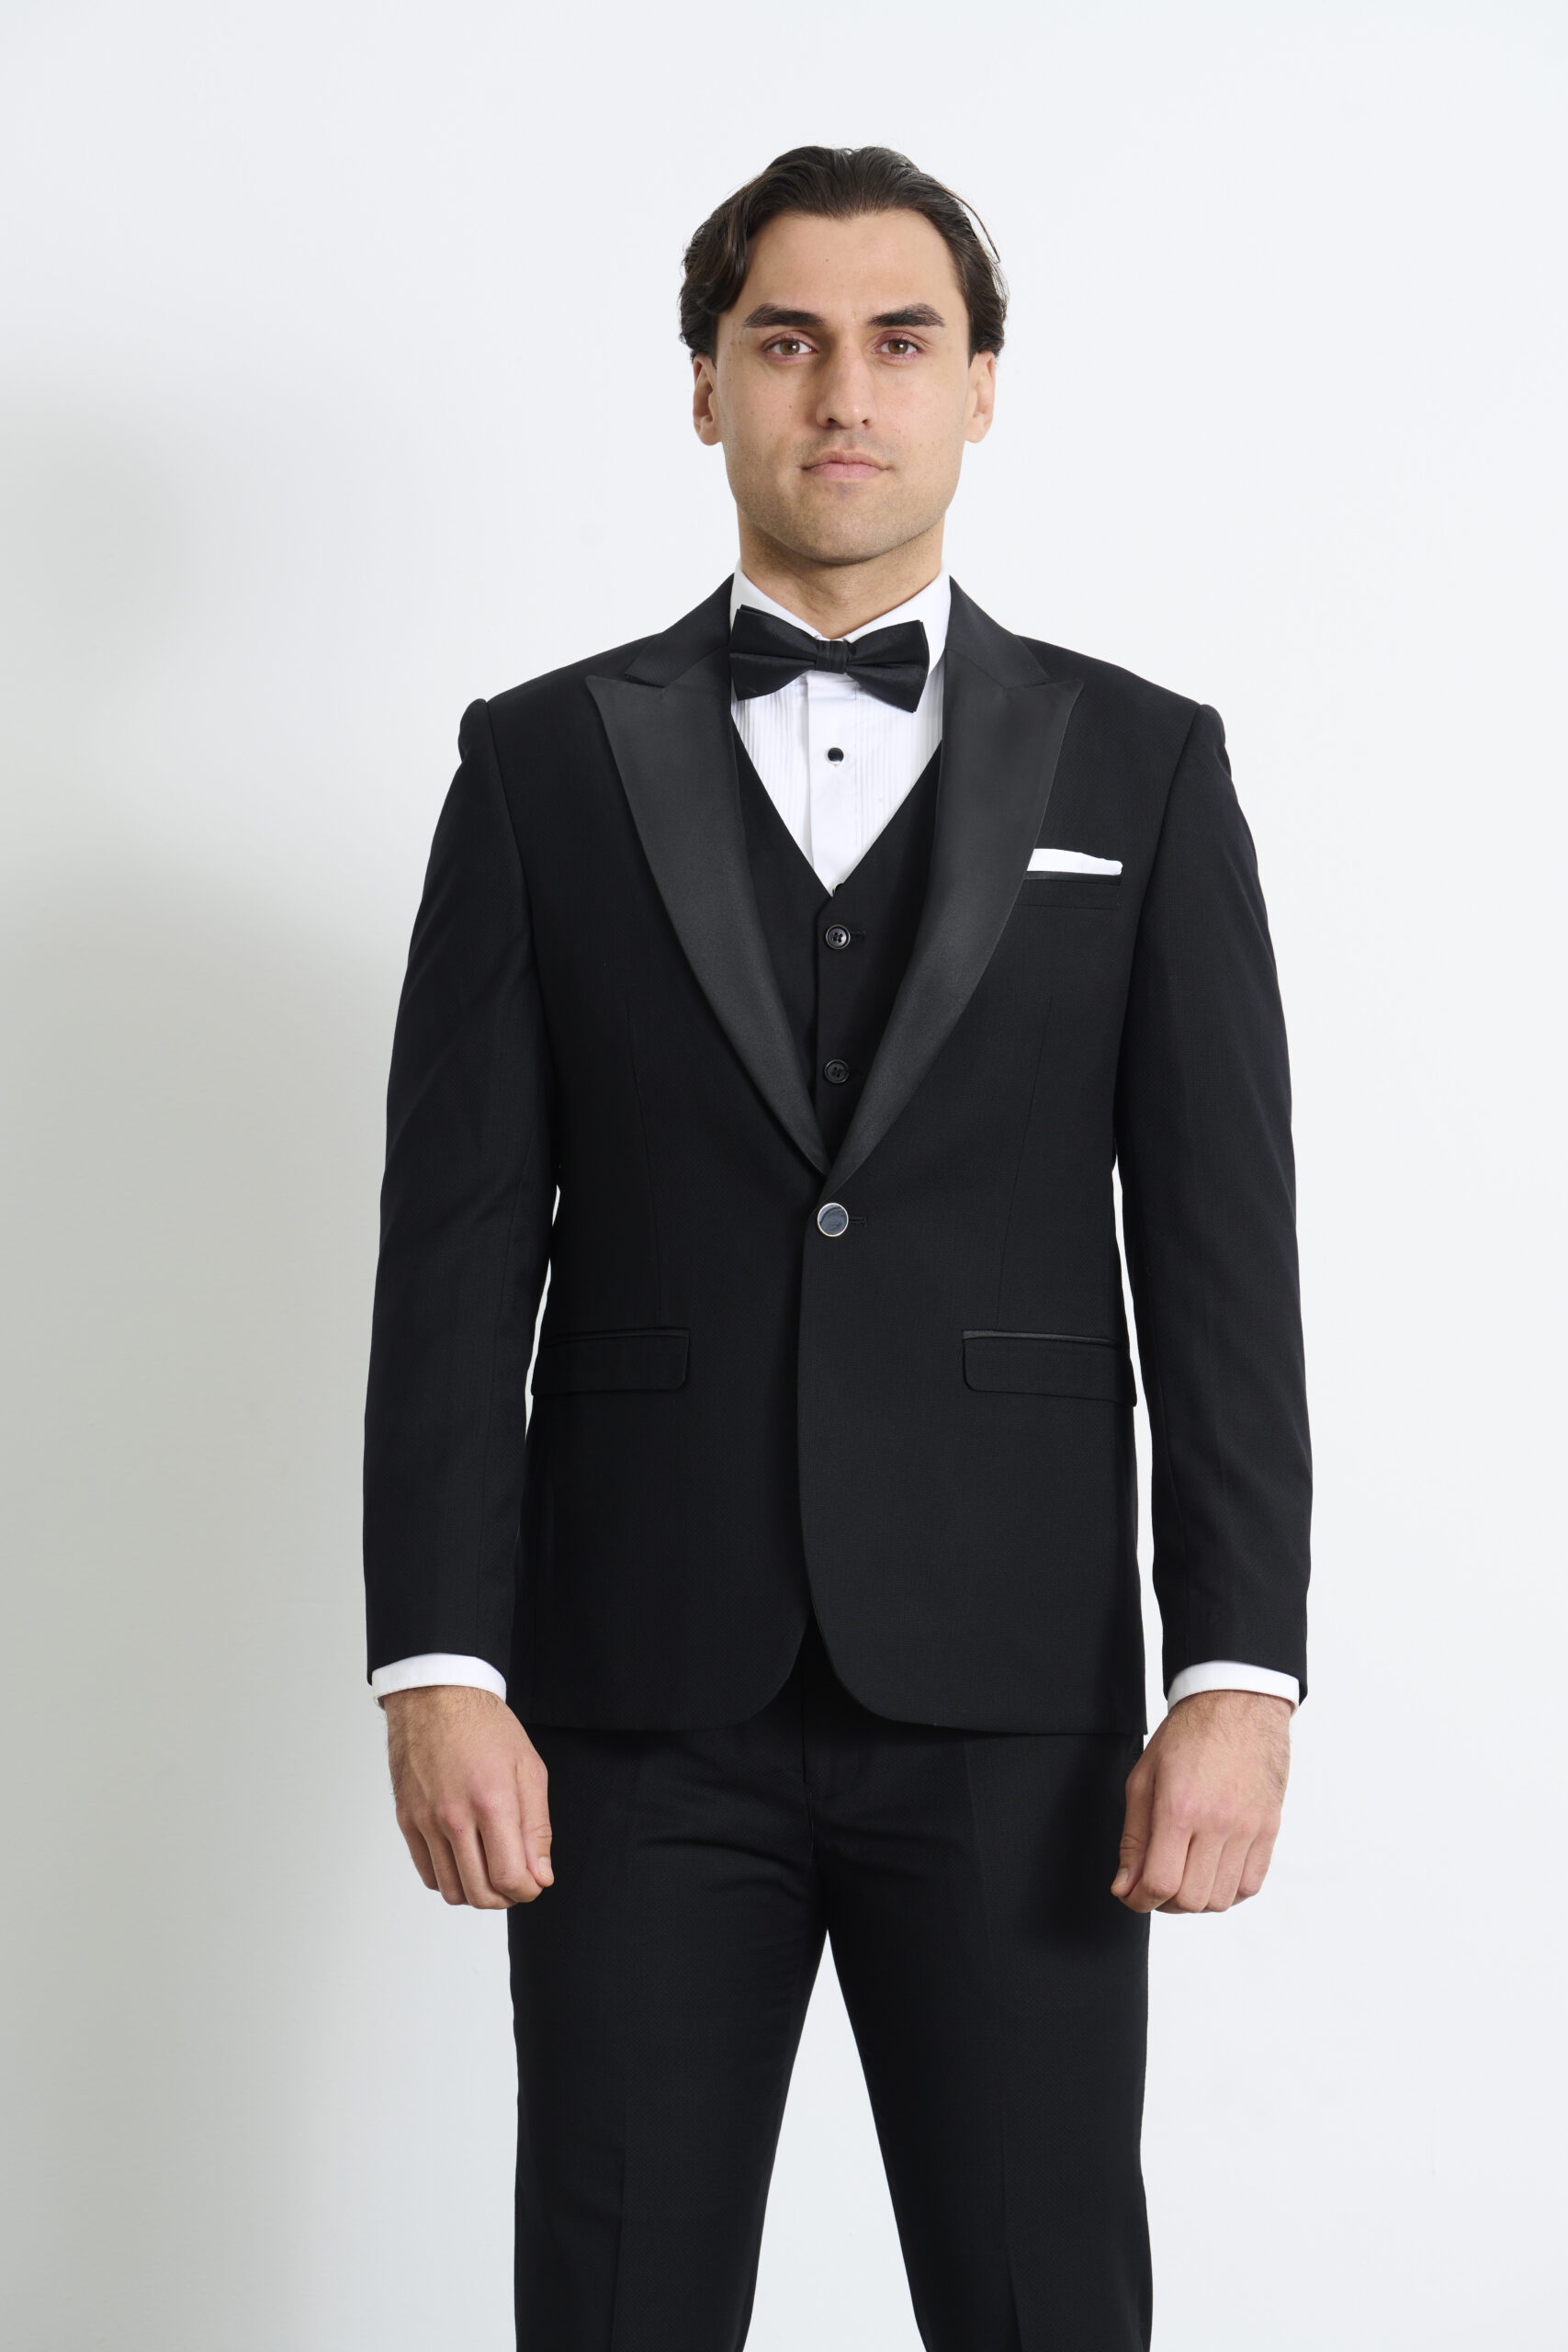 Suitor, Black Tuxedo Peak Lapel Hire, Suit & Tuxedo Rentals